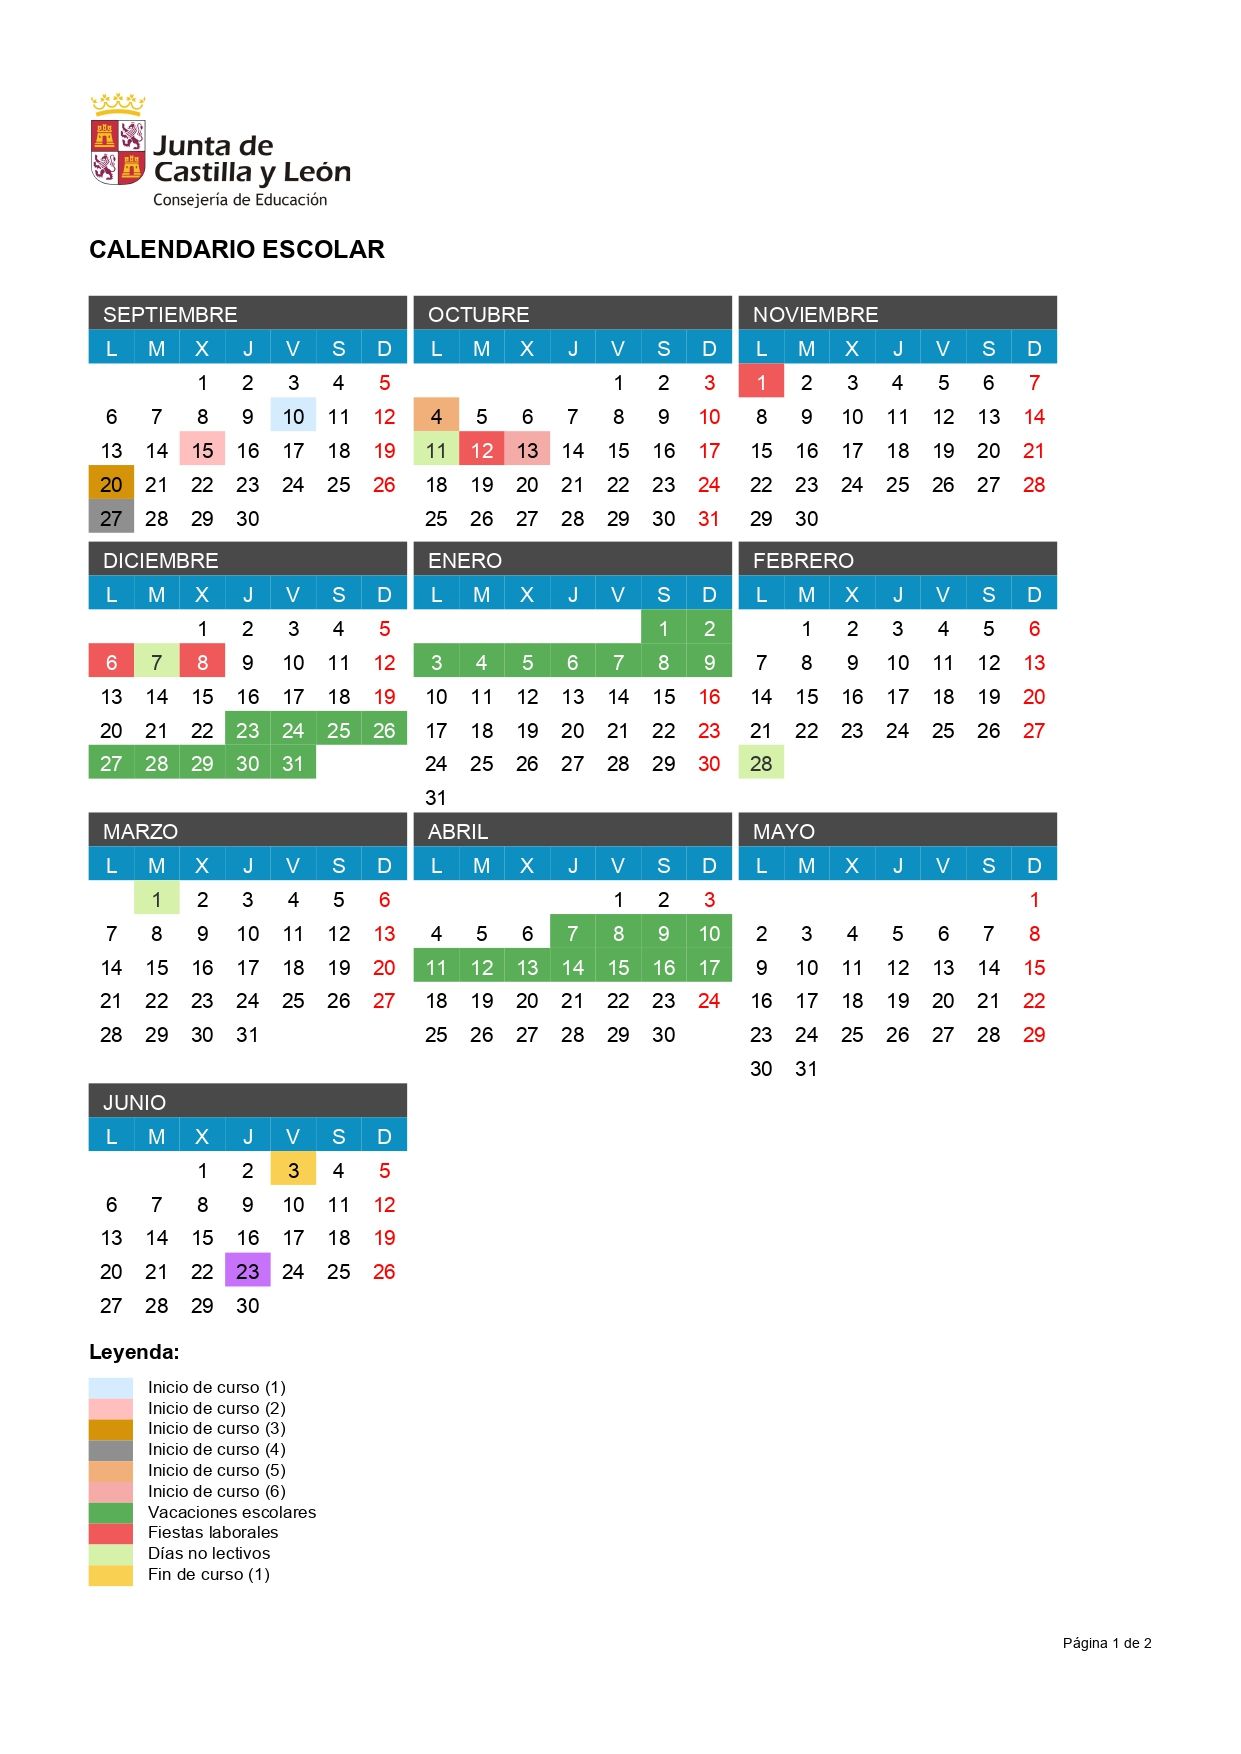 Calendario escolar 2021 2022